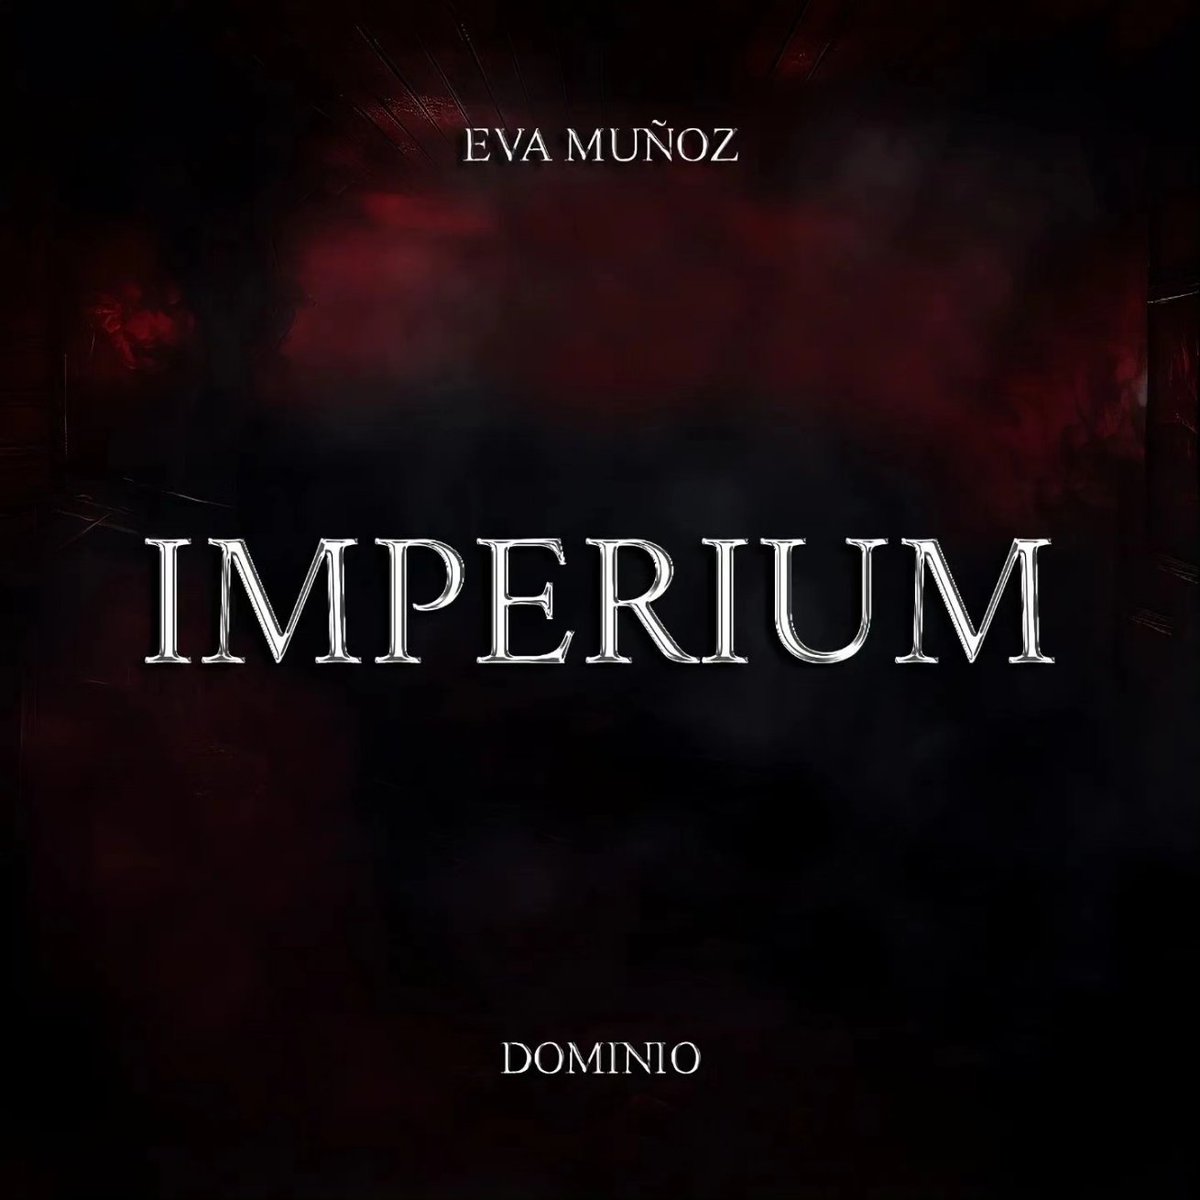 En mi podcast pasó nuestra diosa @EvaMuozBenitez y habló sobre Imperium 🔥 encuentran el podcast en linktree.com/luisavilaok 🍎